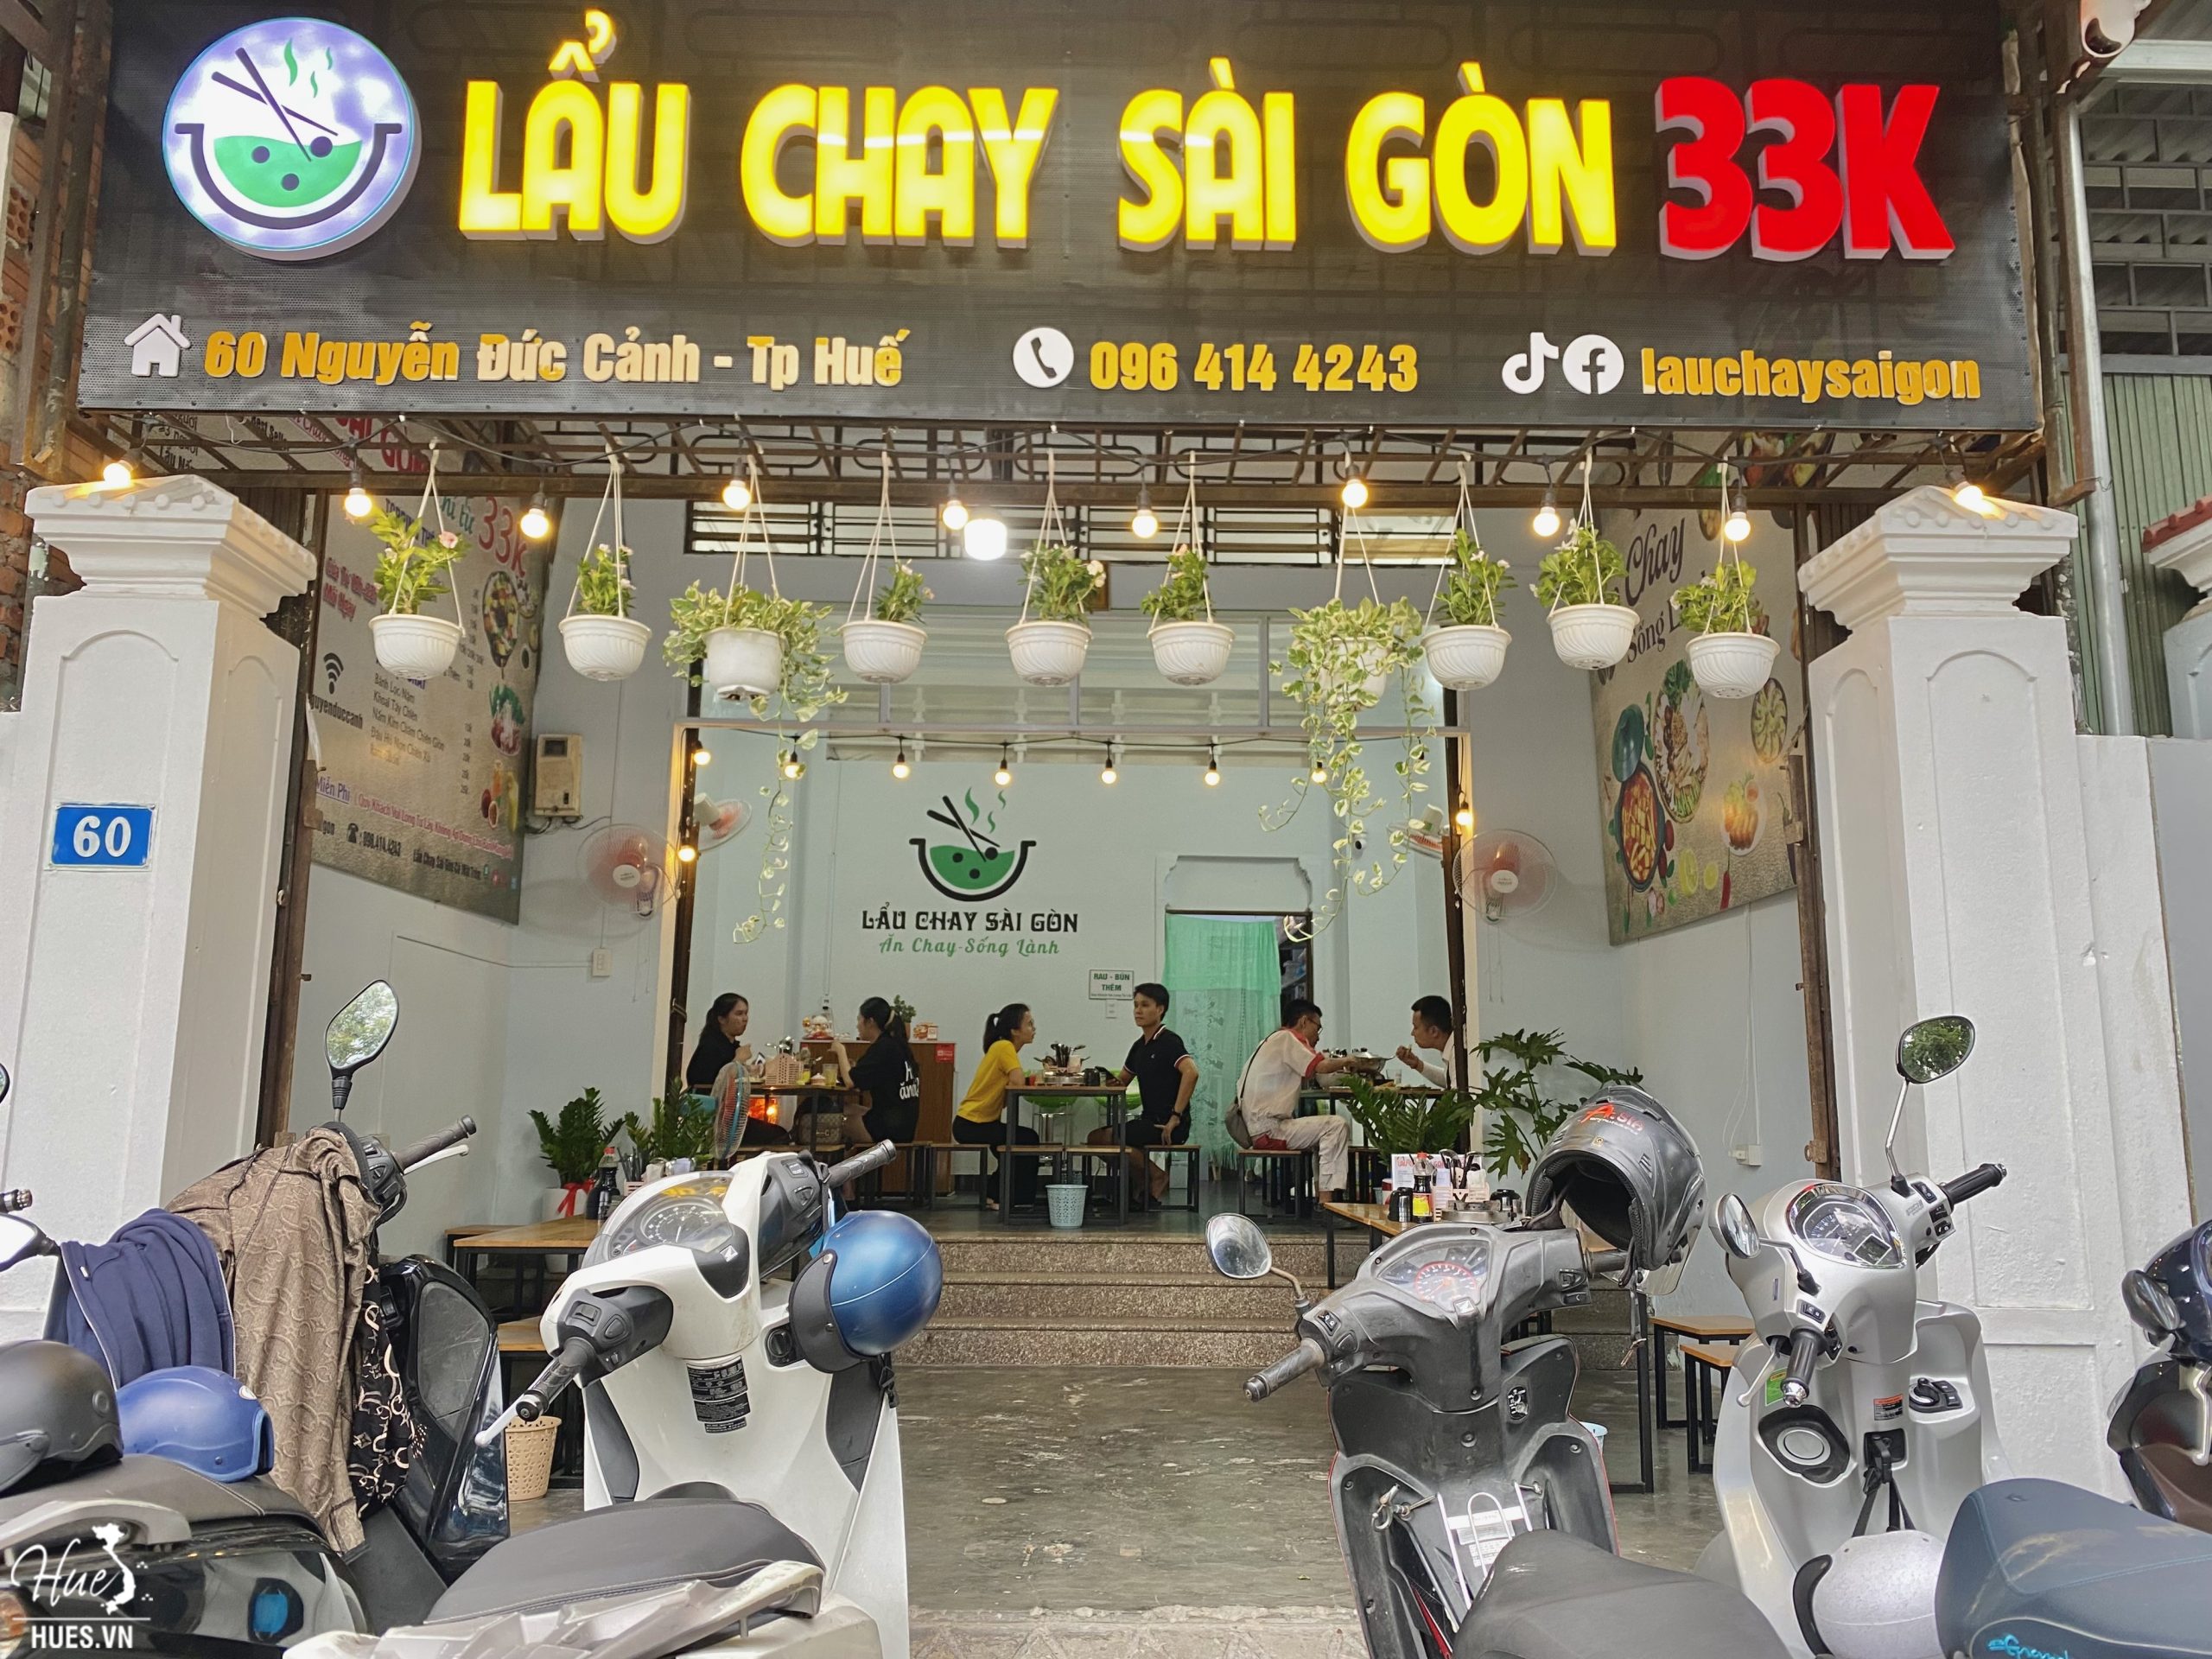 Lẩu Chay Sài Gòn 33K